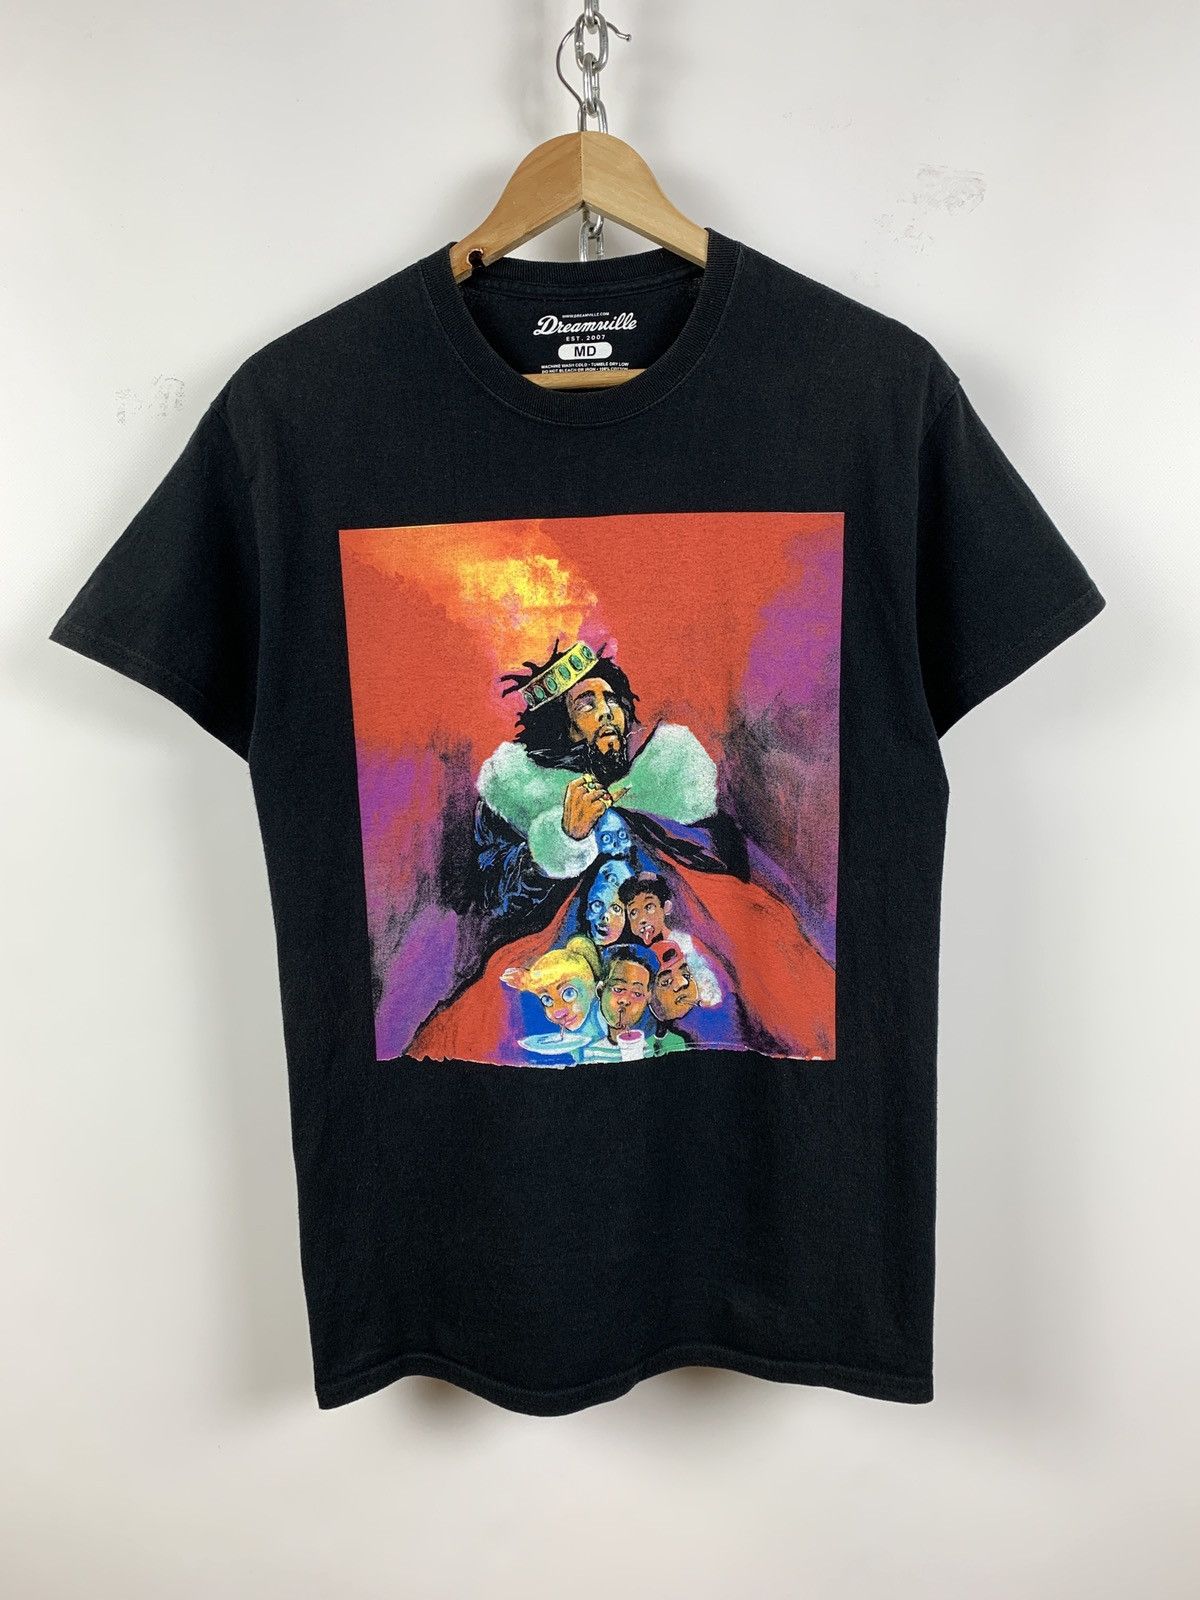 Dreamville J. Cole Choose Wisely Art Rap T-Shirt | Grailed